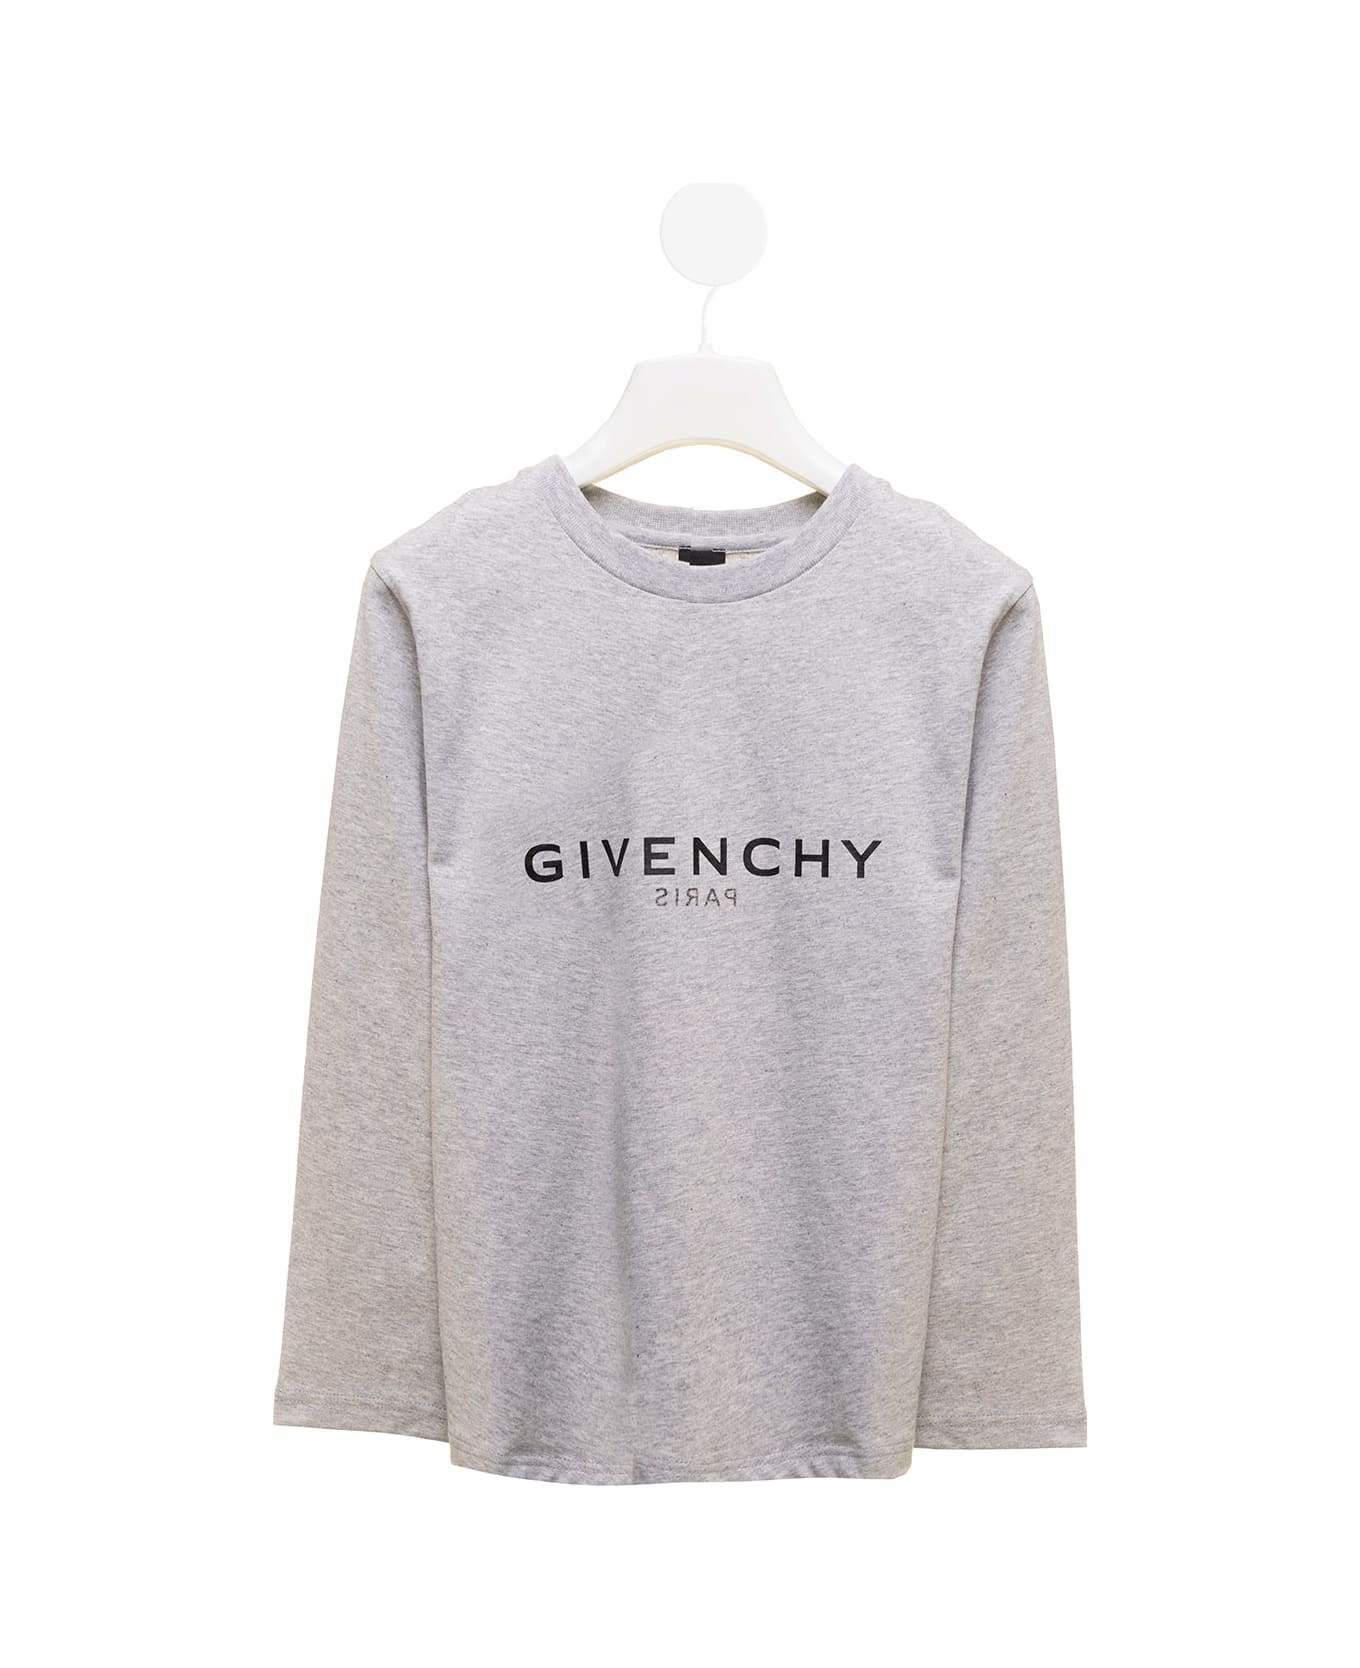 Givenchy H25375ta47 - Grey